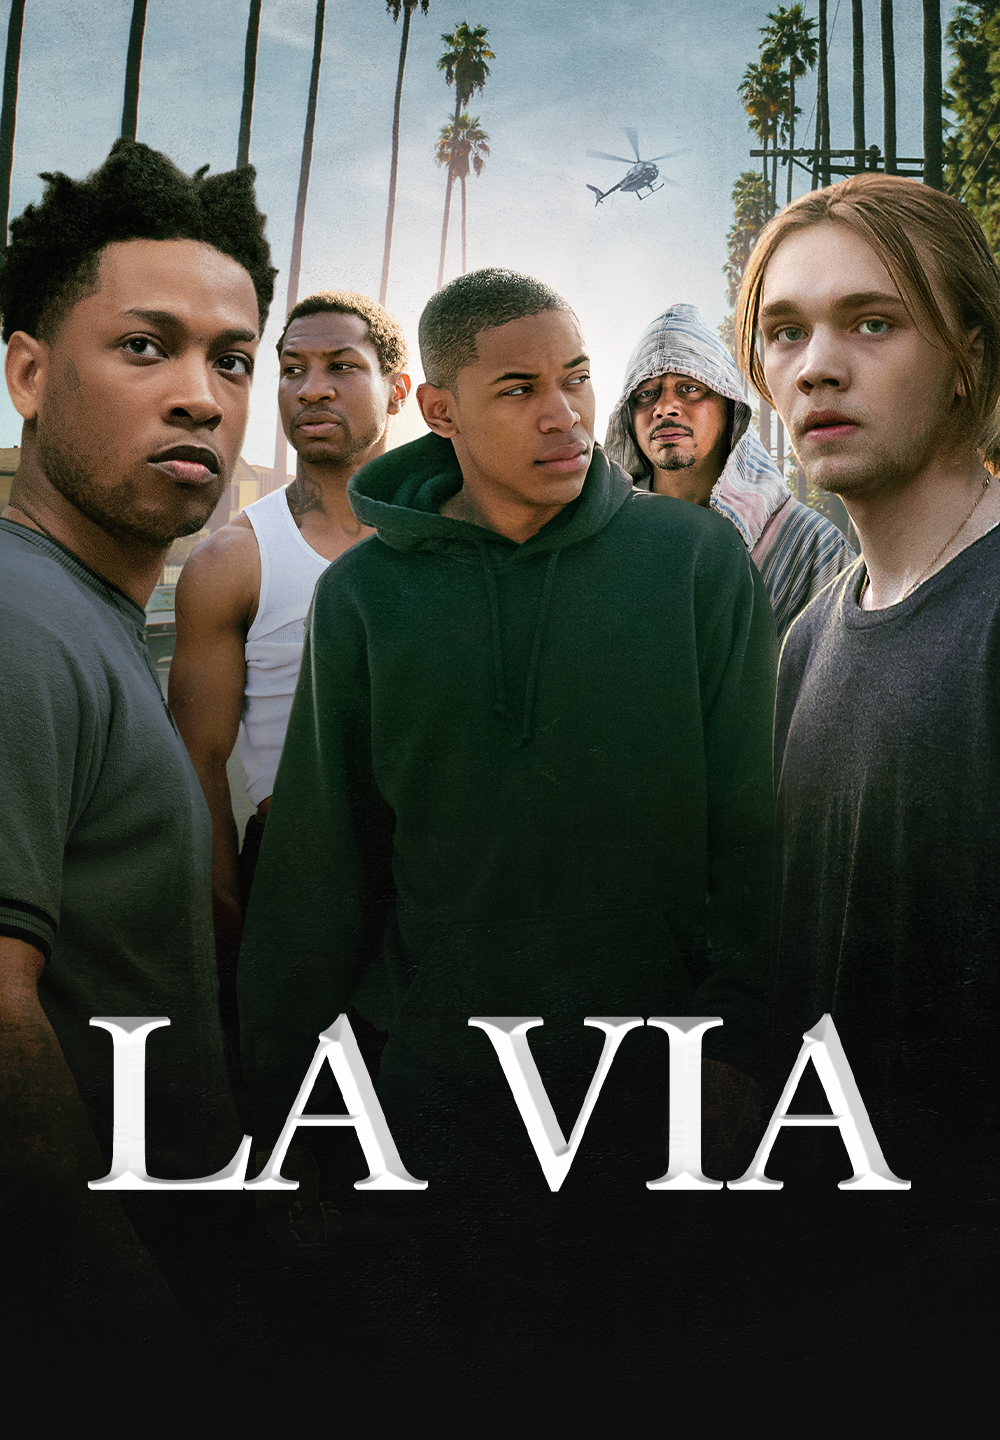 La via [HD] (2019)